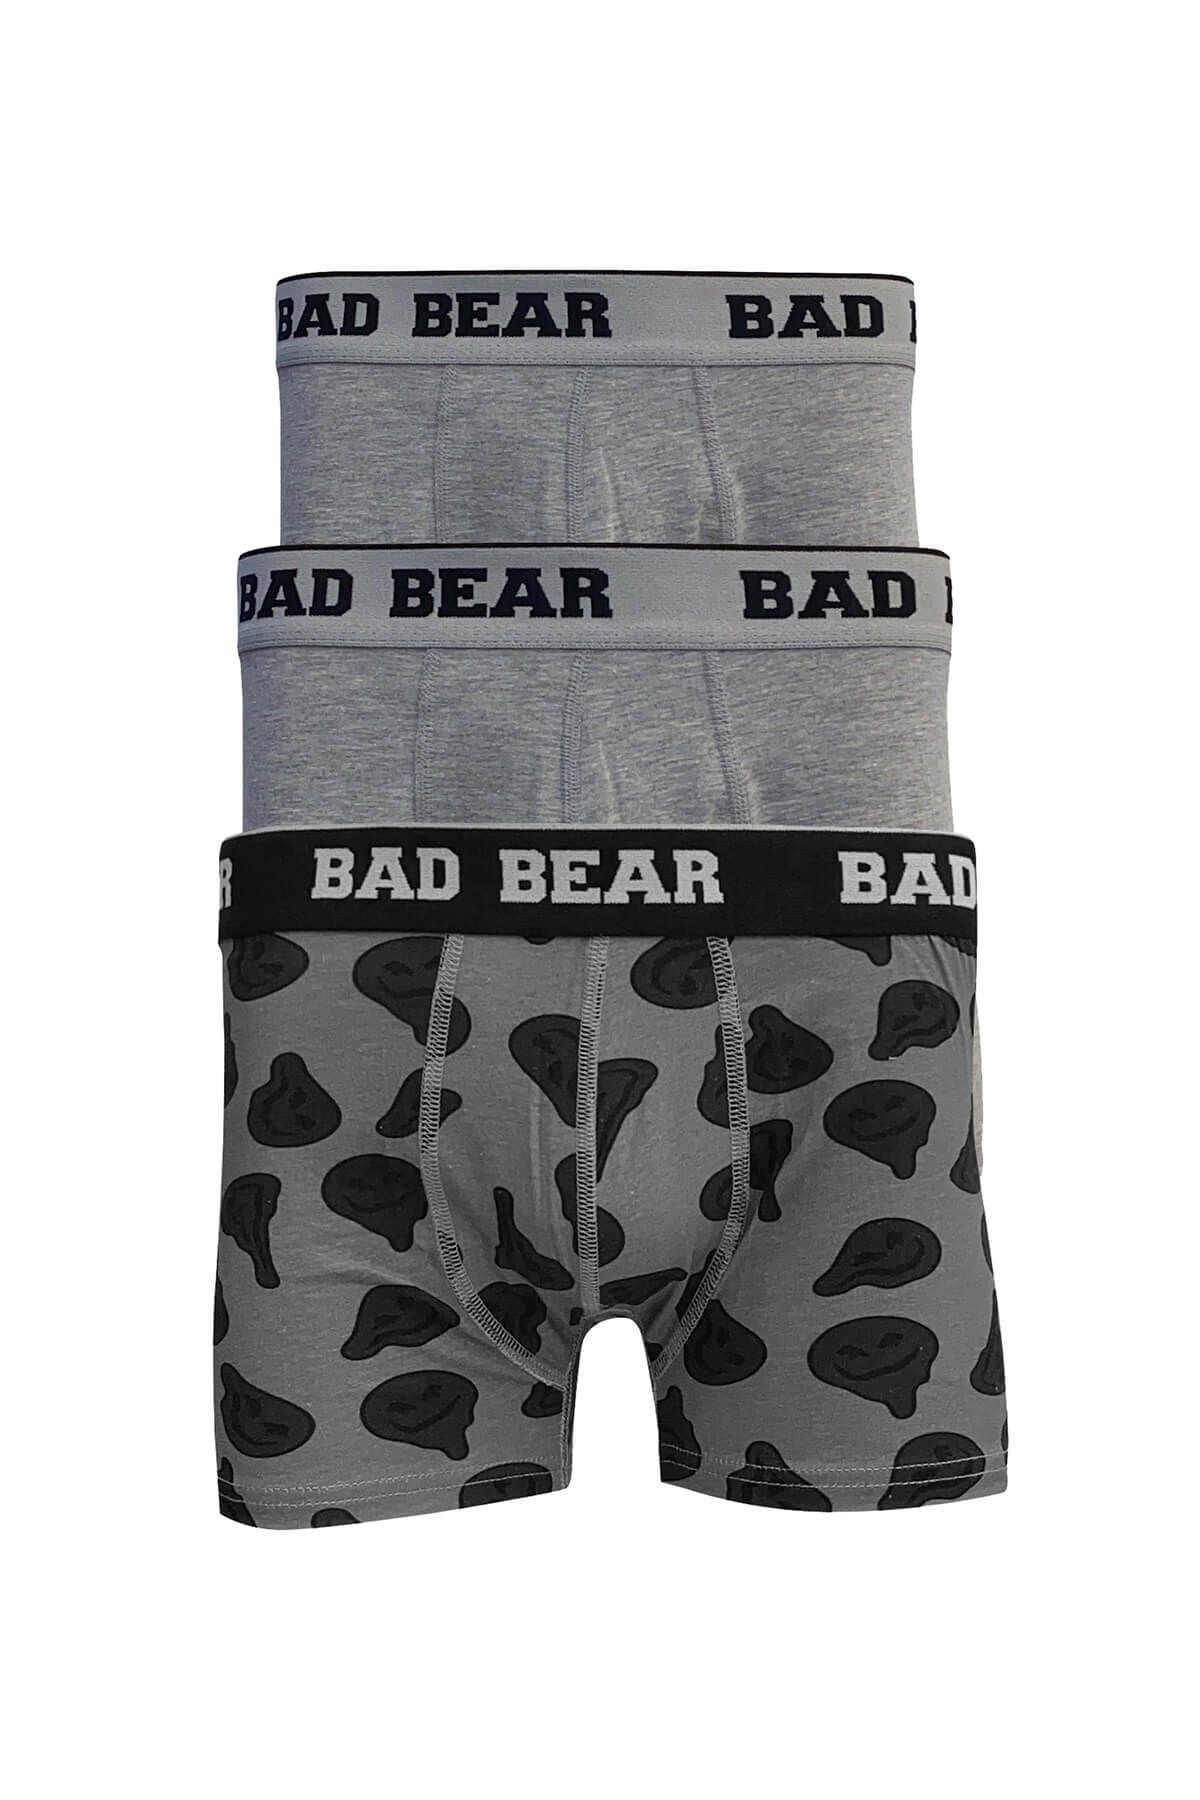 Bad Bear Melt 3 Pack Gri Melanj Desenli 3'lü Erkek Boxer Set